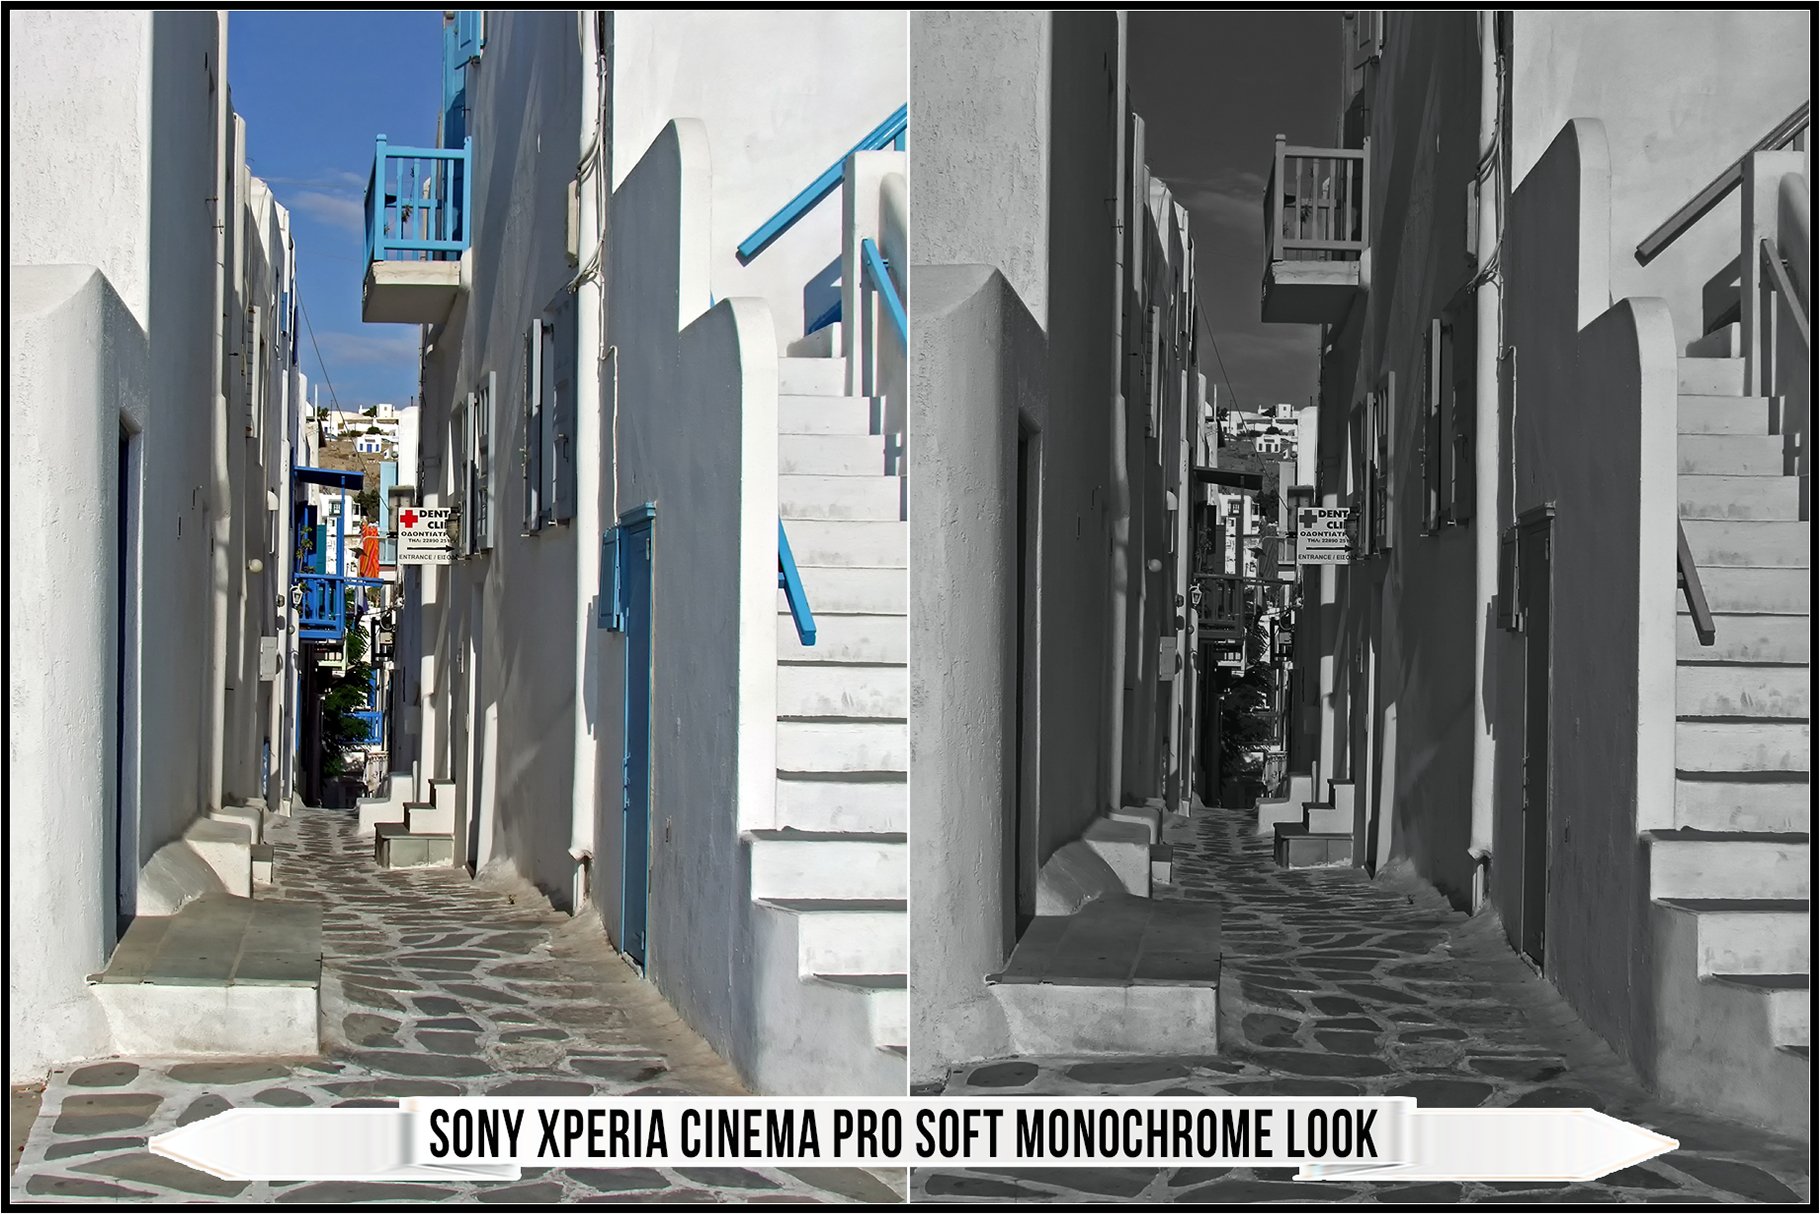 sony xperia cinema pro soft monochrome look 410